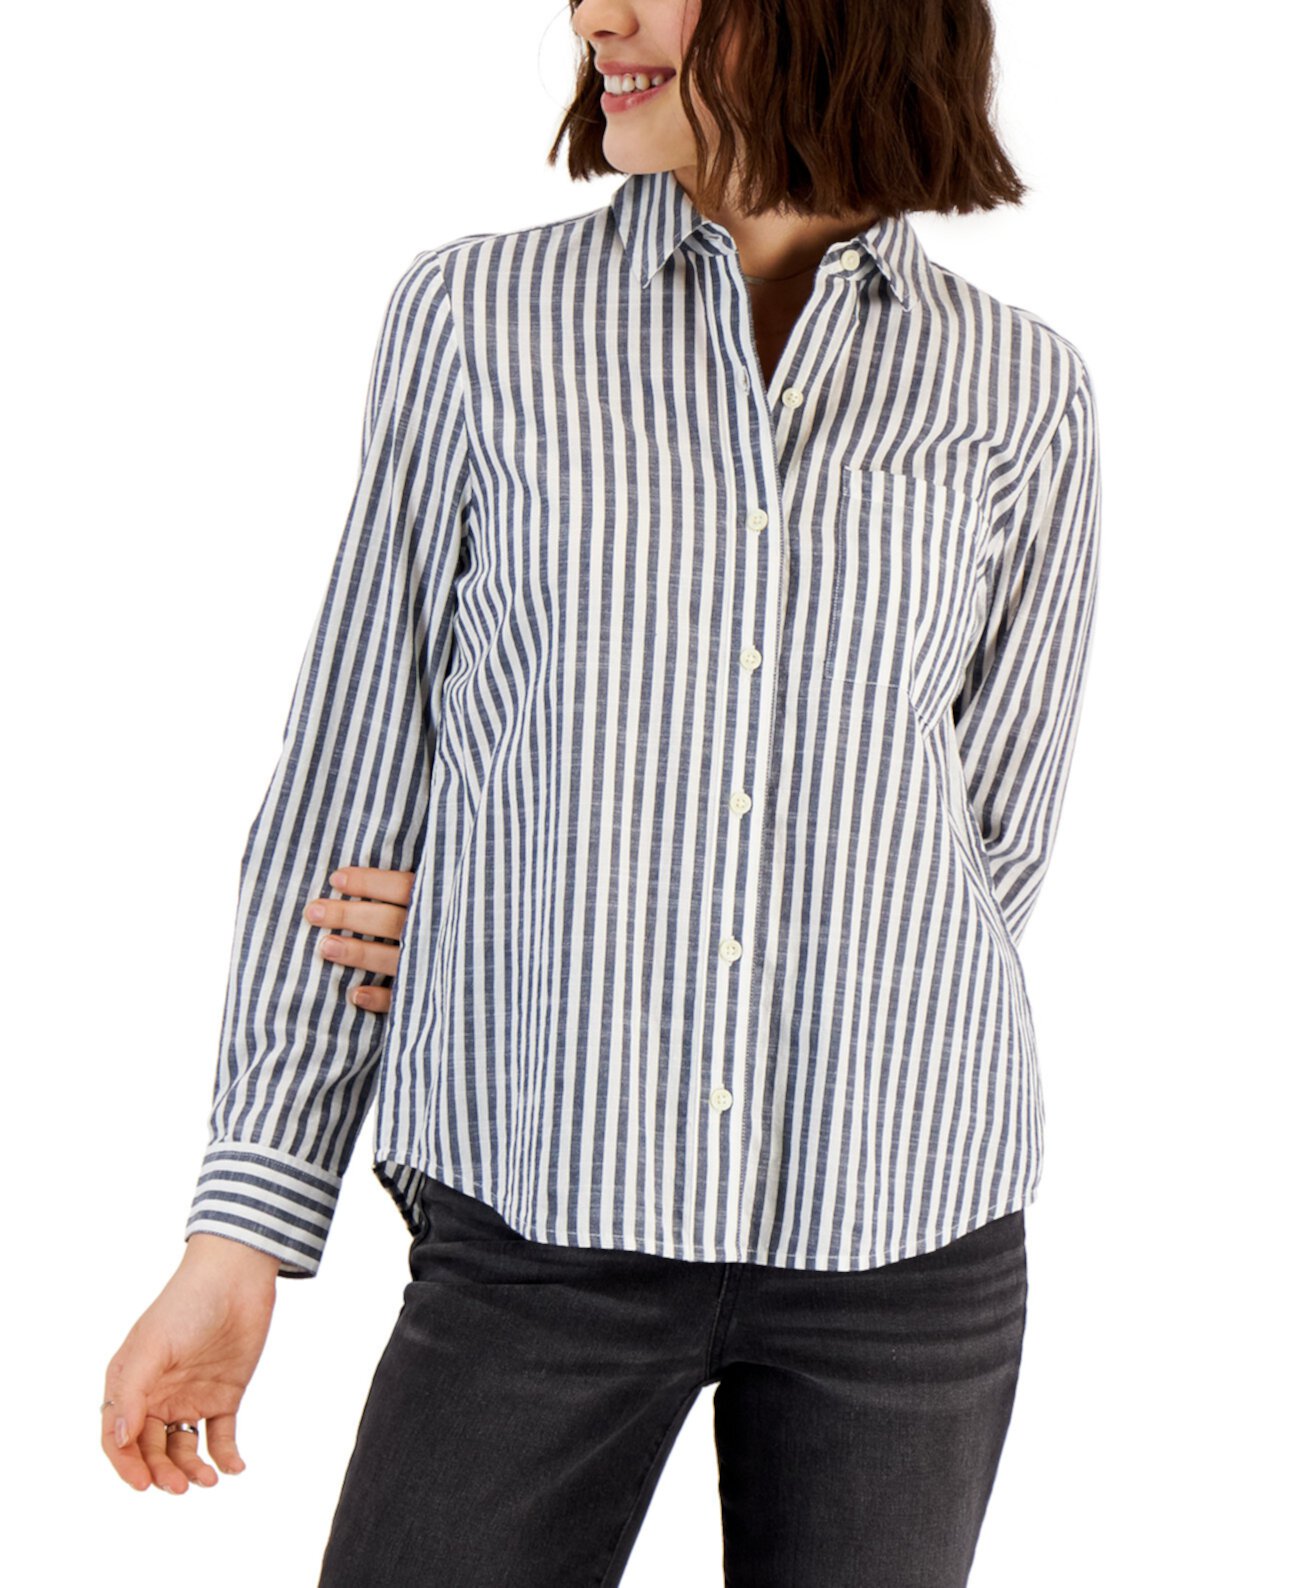 Миниатюрная классическая рубашка с пуговицами, созданная для Macy's Style & Co